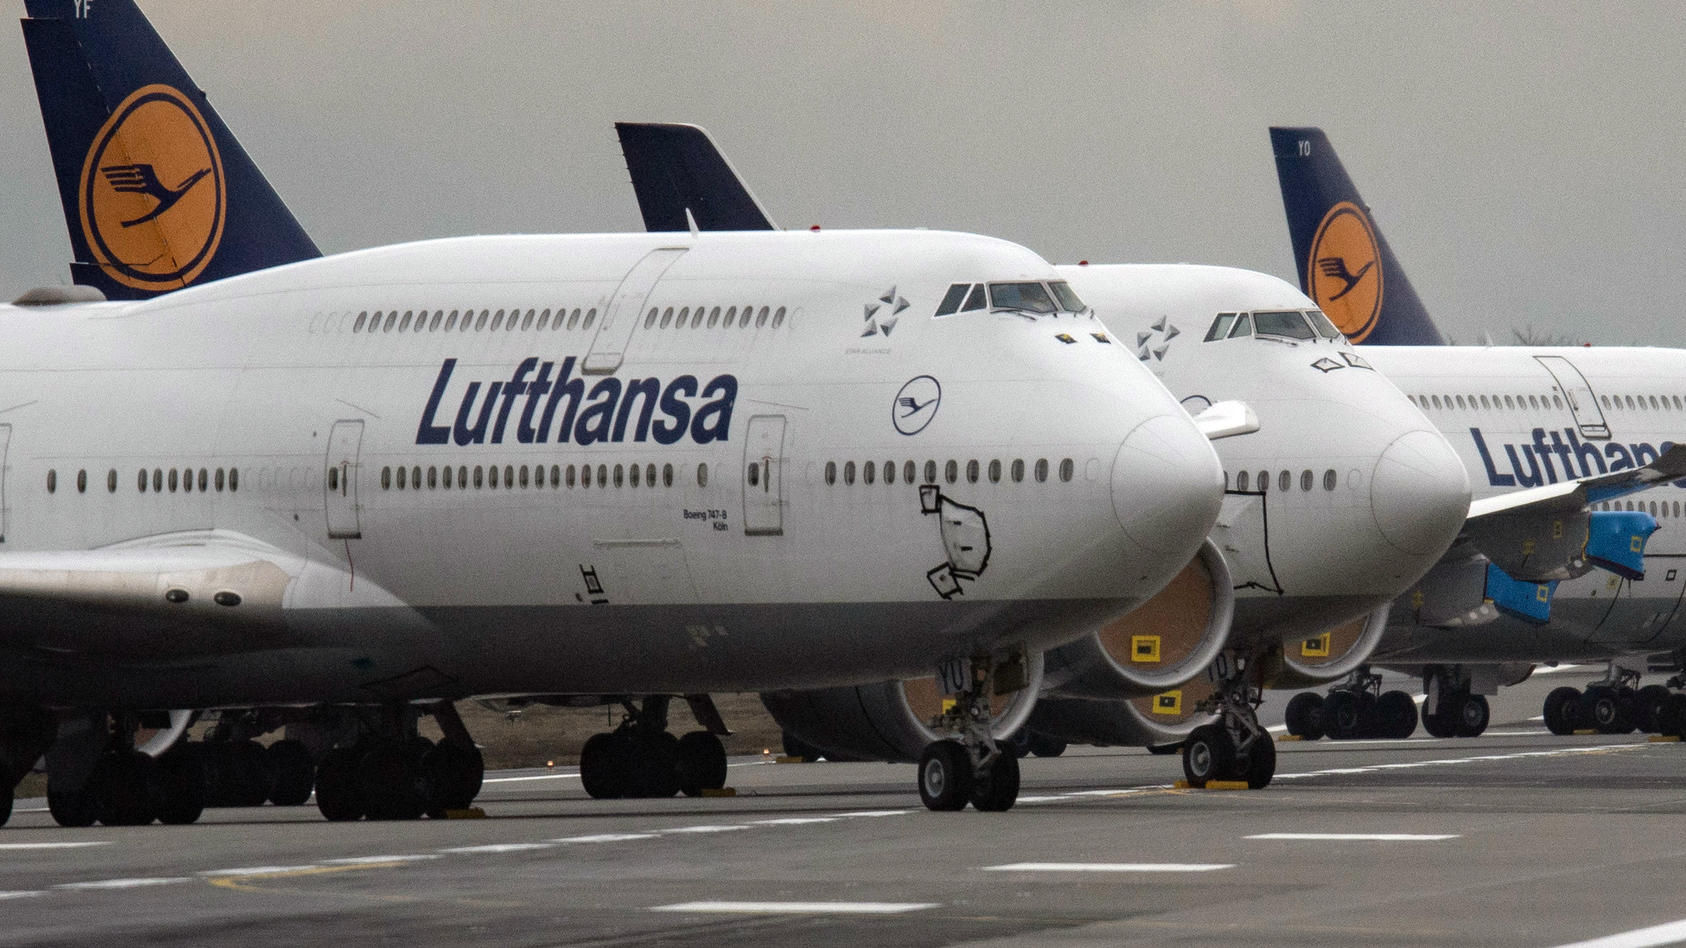 ARCHIV - 28.12.2020, Hessen, Frankfurt/Main: Lufthansa-Jets vom Typ Boeing 747 stehen auf der Landebahn Nordwest des Flughafens Frankfurt. Verdi fordert 9,5 Prozent mehr für rund 20 000 Bodenbeschäftigte der Lufthansa. Foto: Boris Roessler/dpa +++ dp